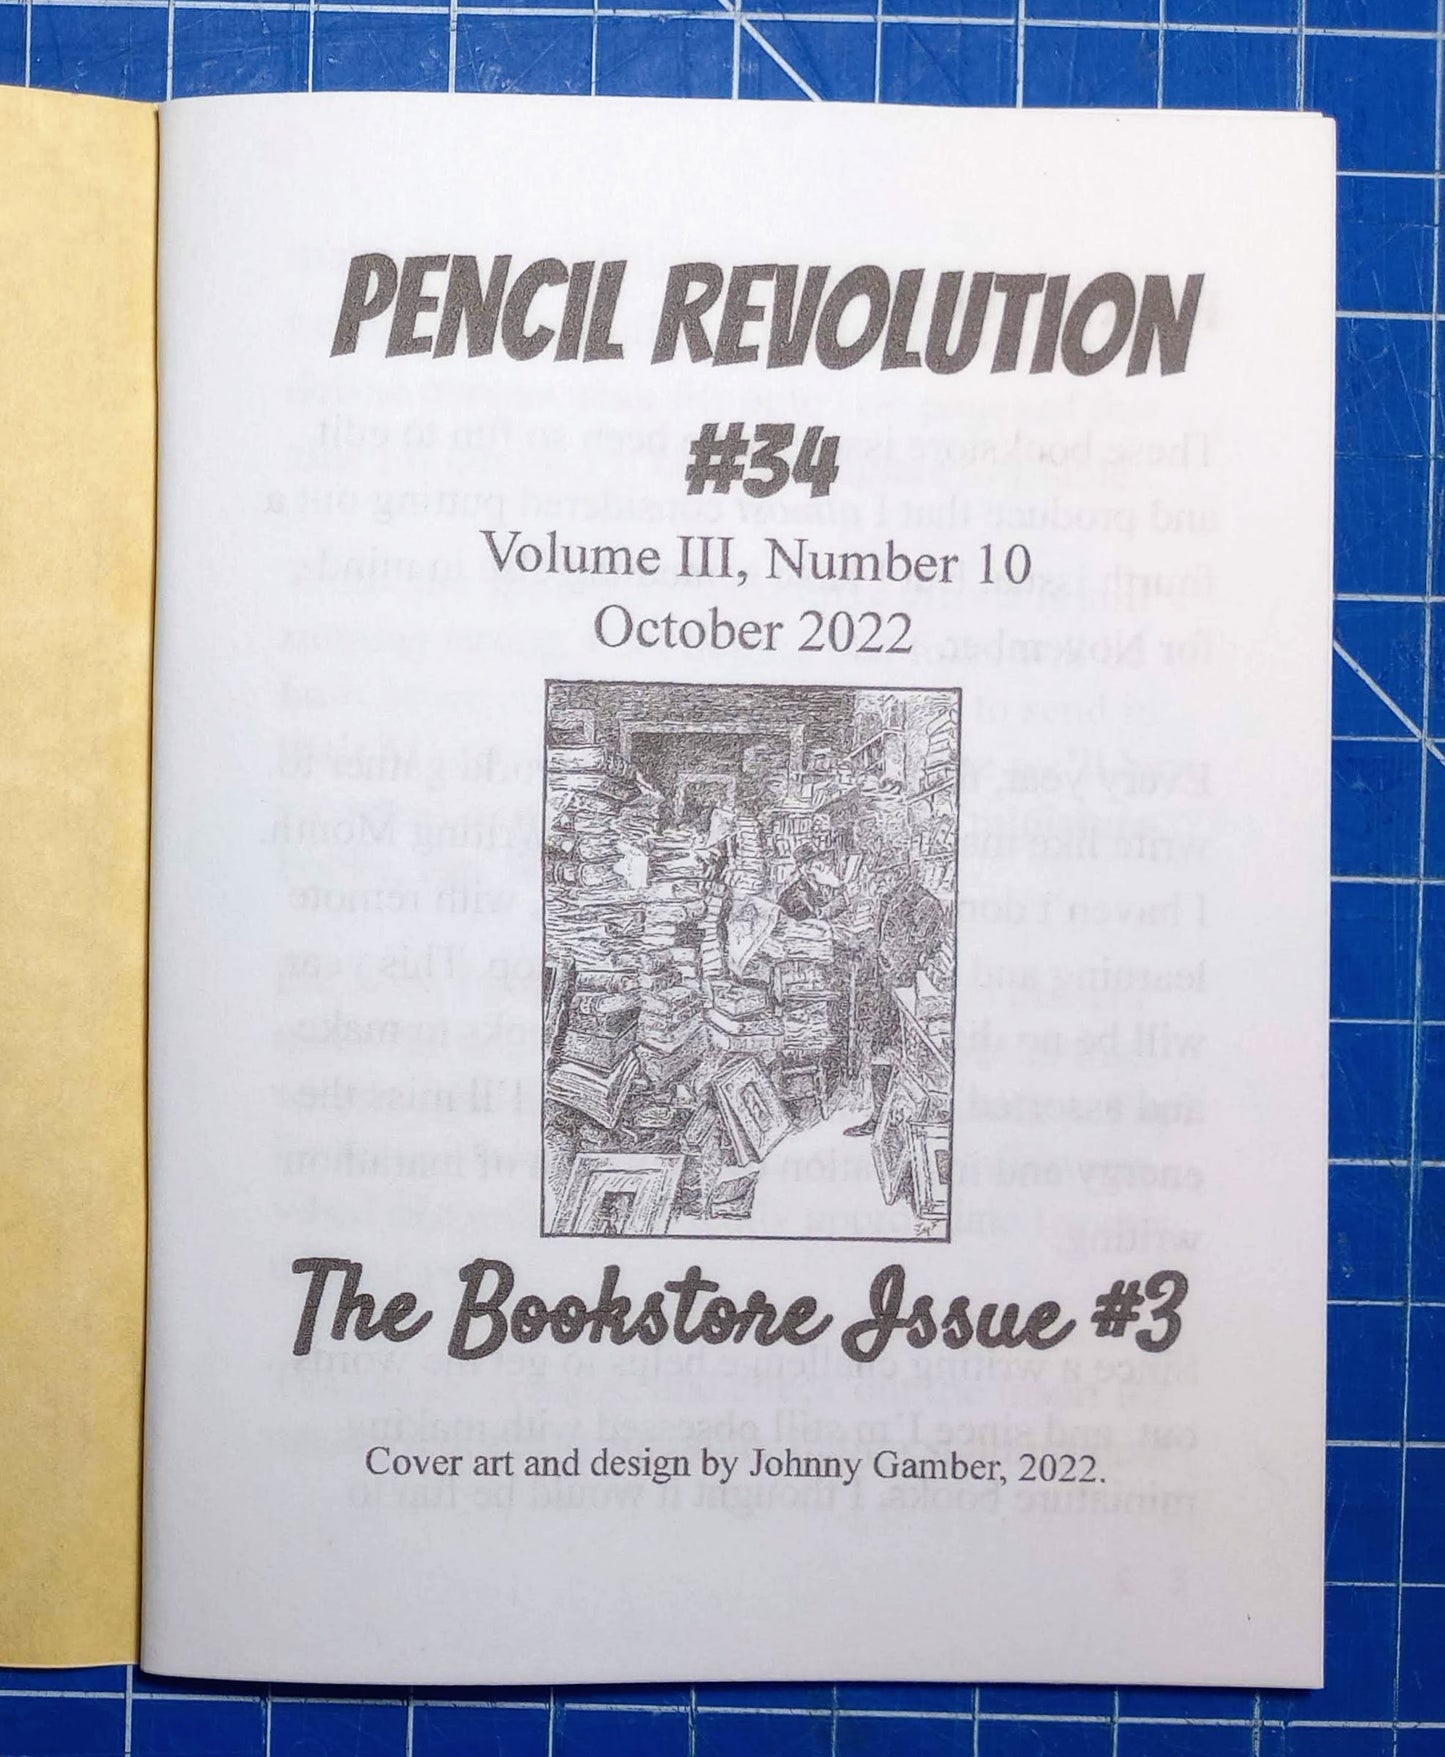 Pencil Revolution Zine No. 34: The Bookstore Issue #3